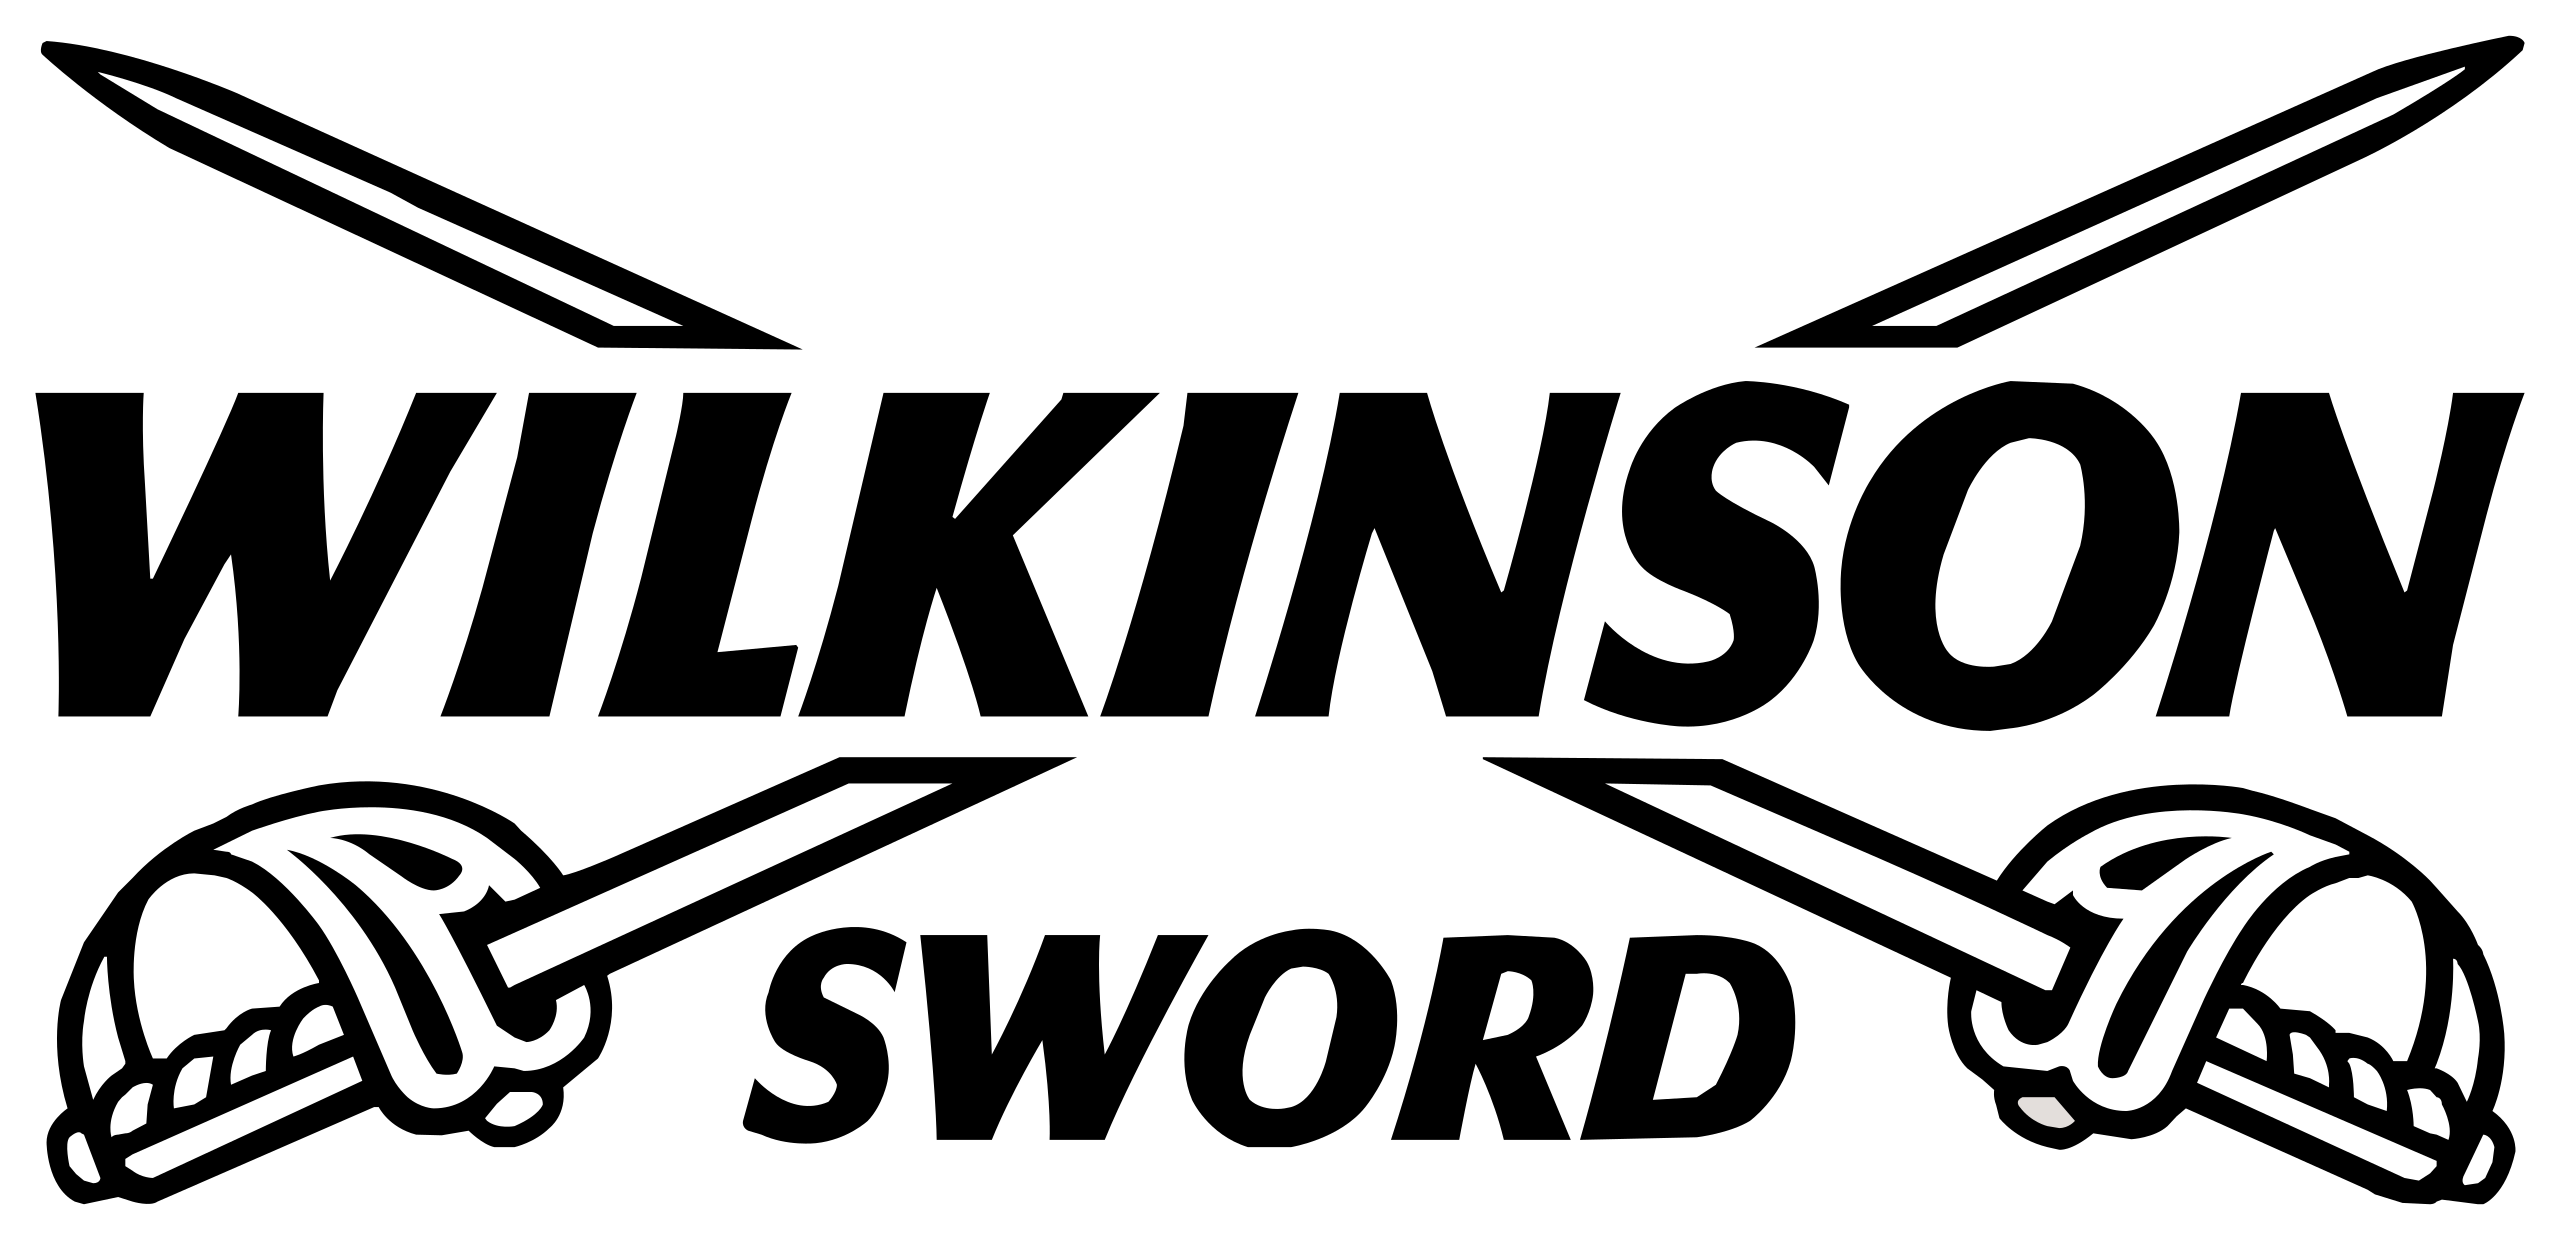 Wilkinson logo